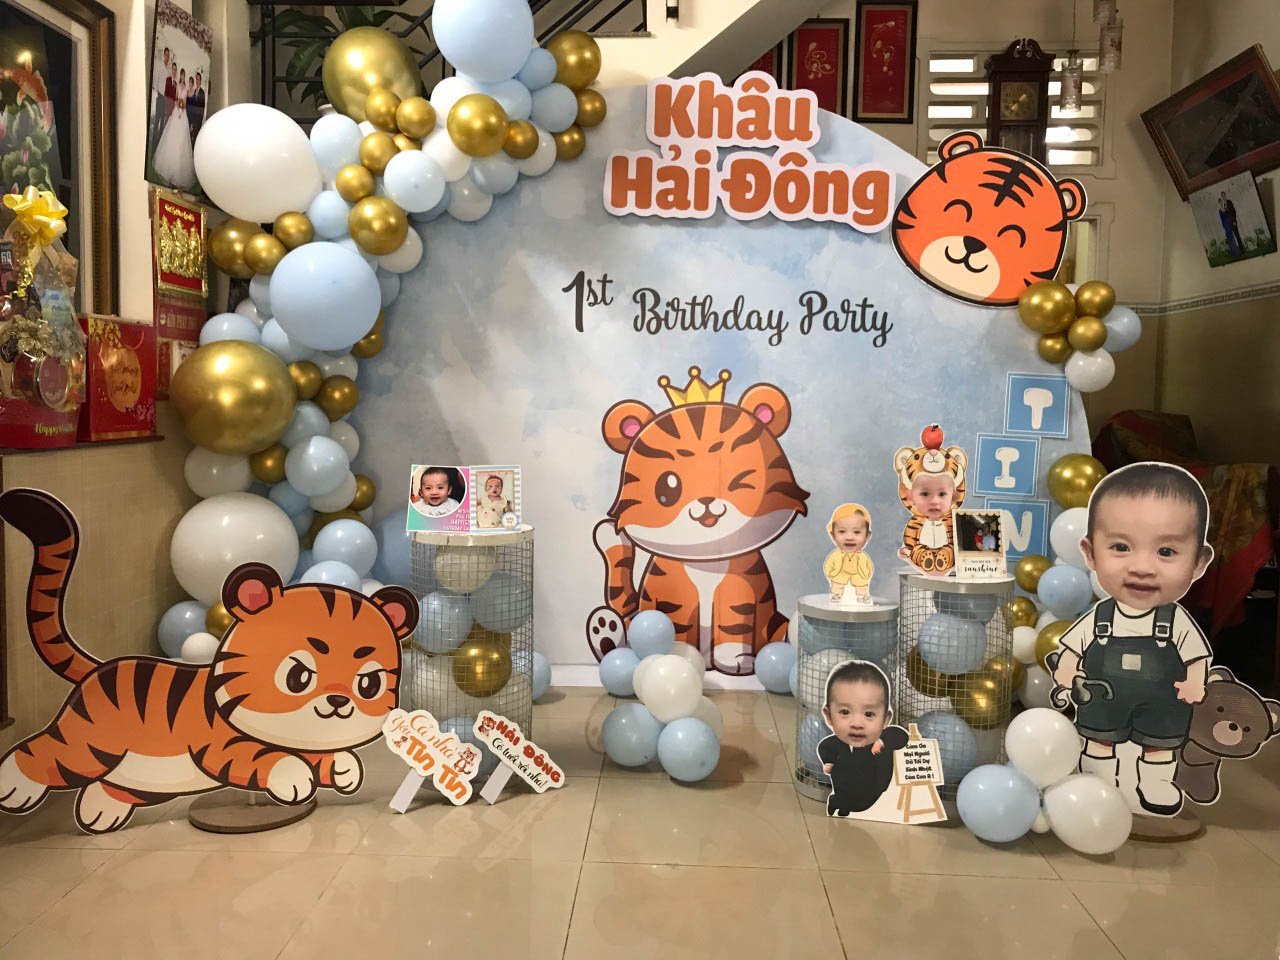 Trang trí sinh nhật cho bé tại nhà Cầu Giấy Minh Đăng  Bảo Châu  Dịch vụ trang  trí sinh nhật tại Hà Nội